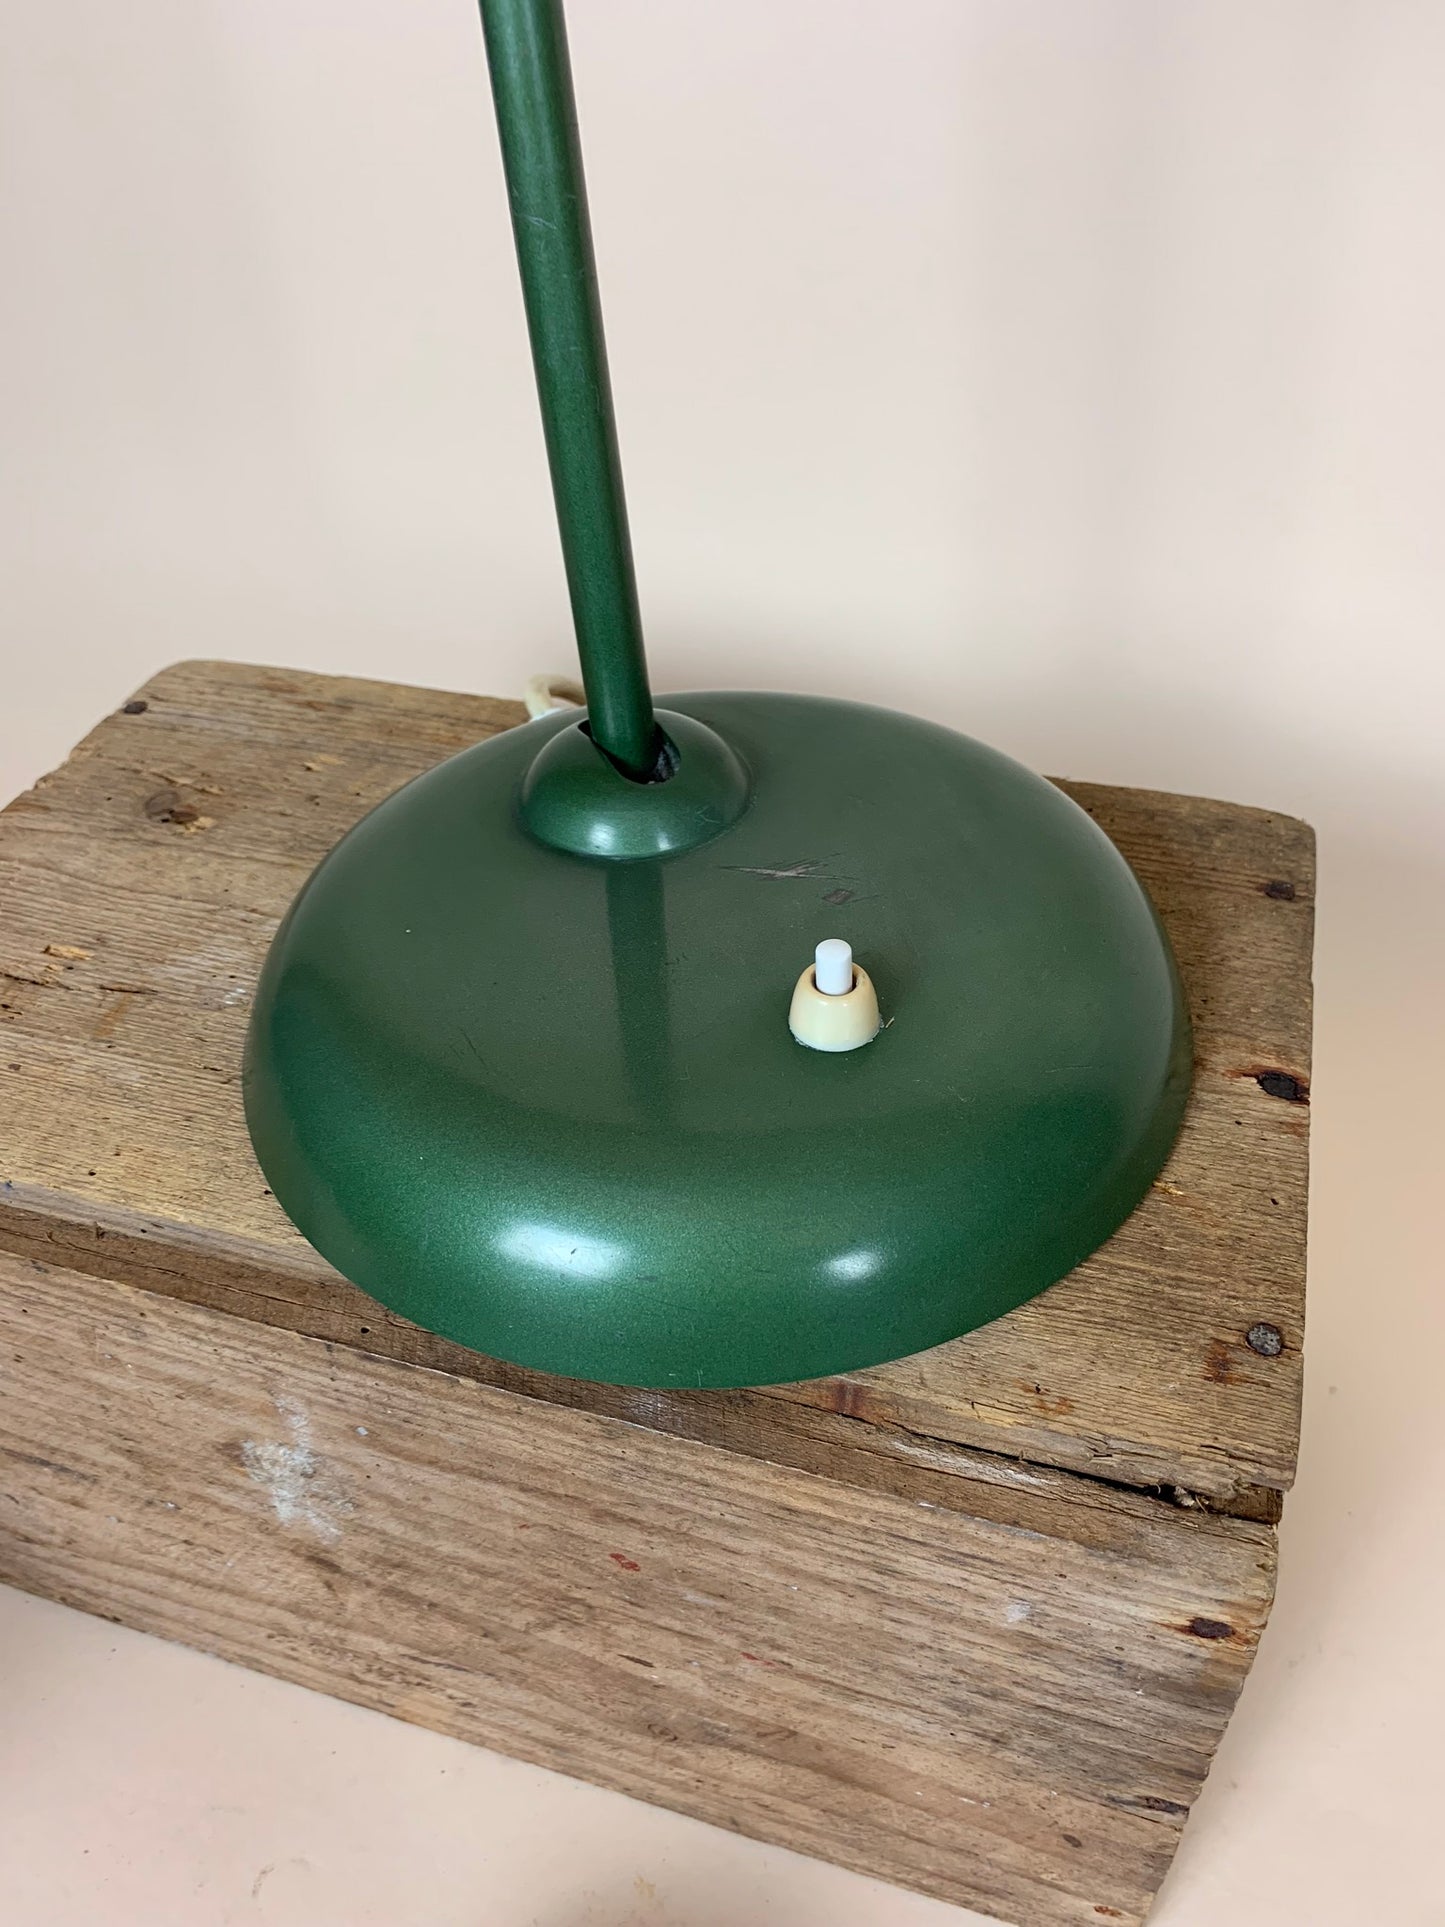 Grüne Kaiser Idell Lampe - entworfen von Christian Dell